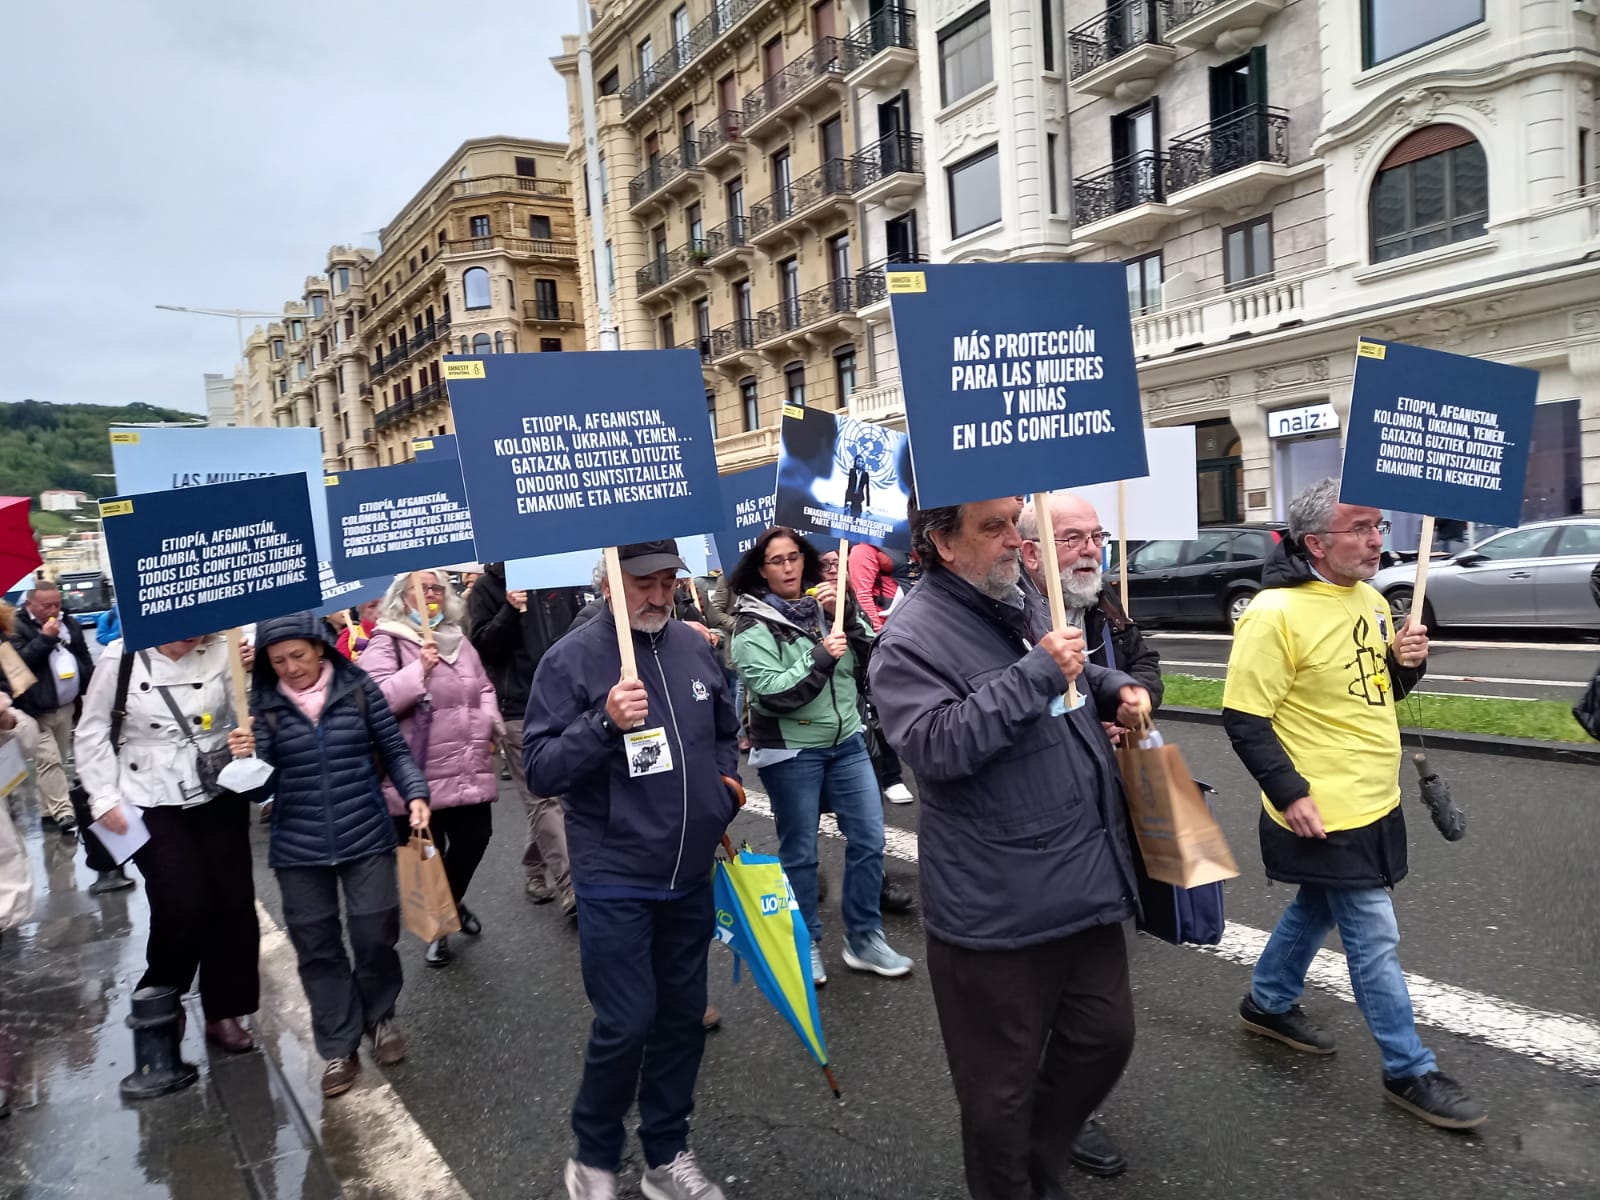 AI5 - Amnistía Internacional pide en San Sebastián más protección para las mujeres en las guerras